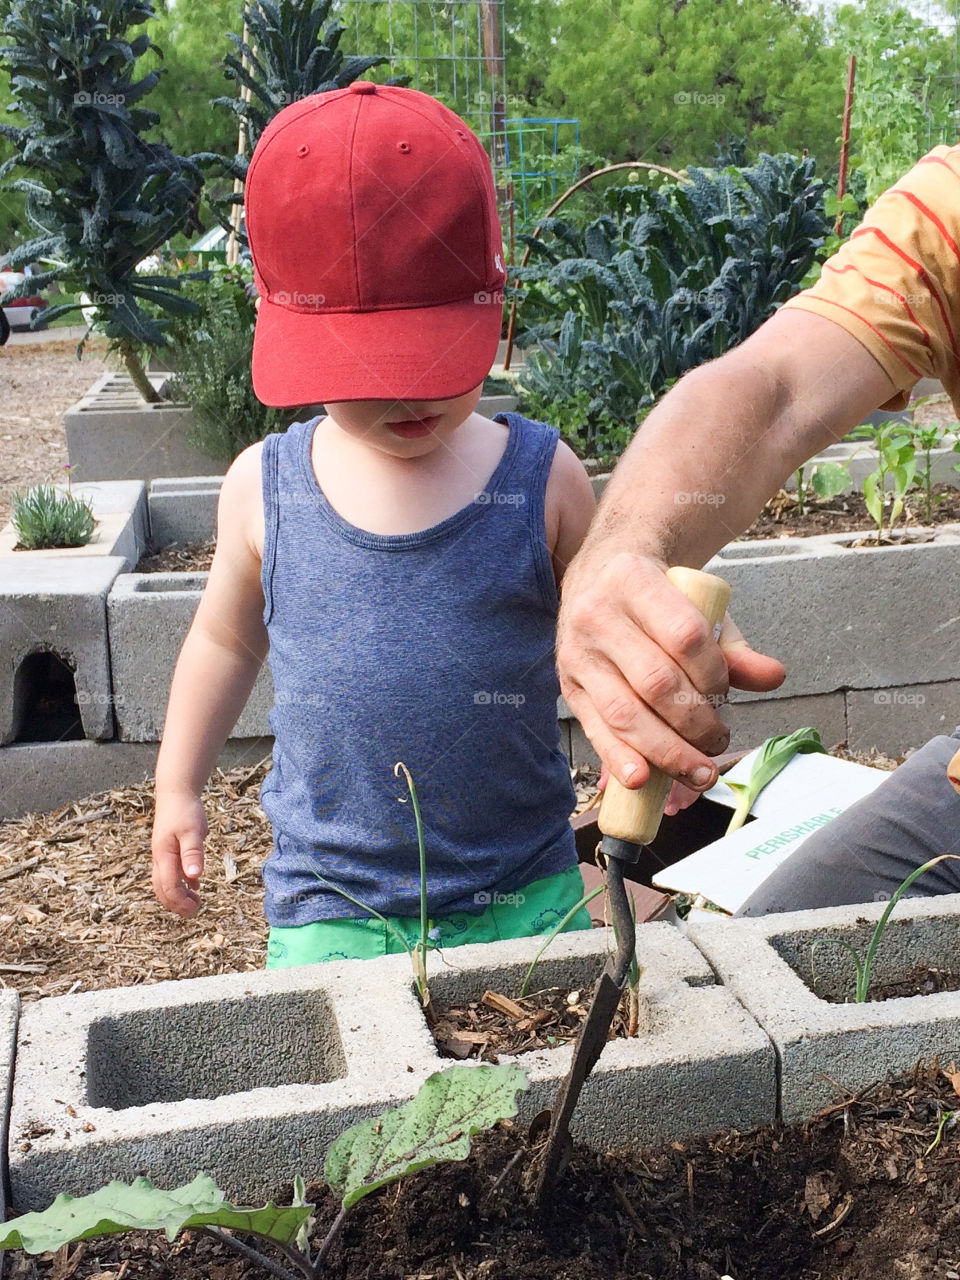 Helping garden